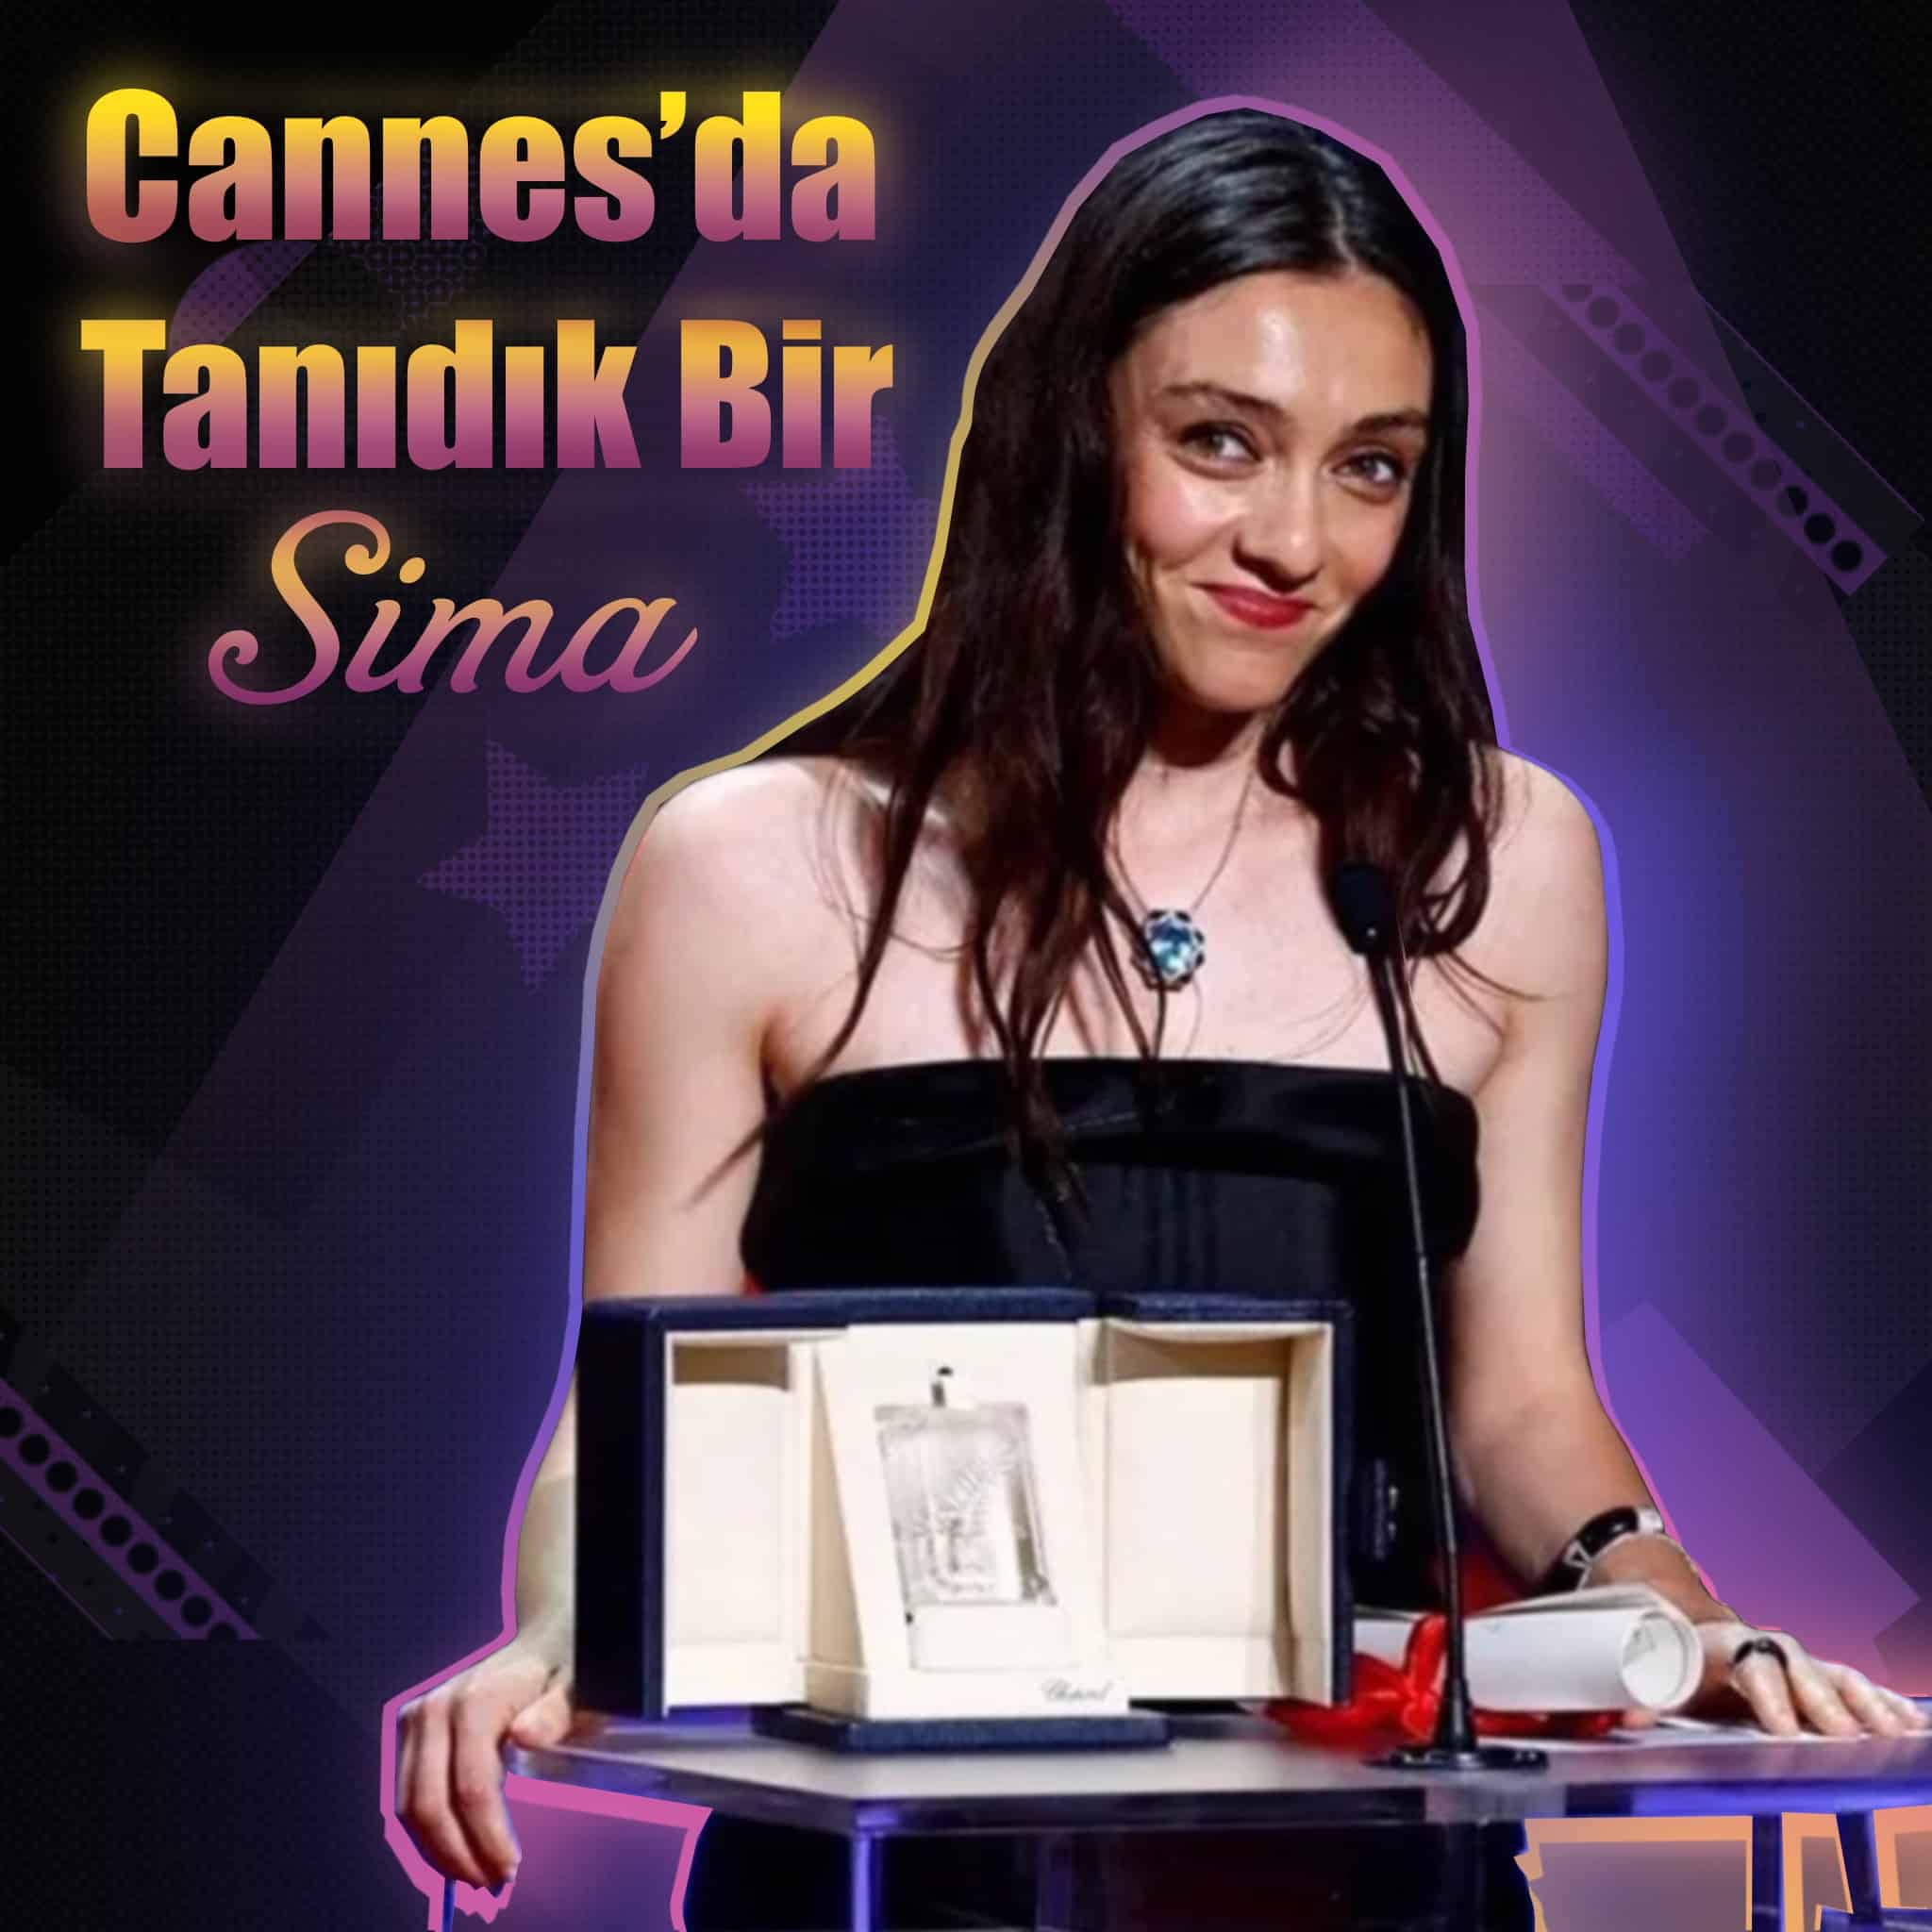 Cannes’da En İyi Kadın Oyuncu Ödülü Merve Dizdar’ın!